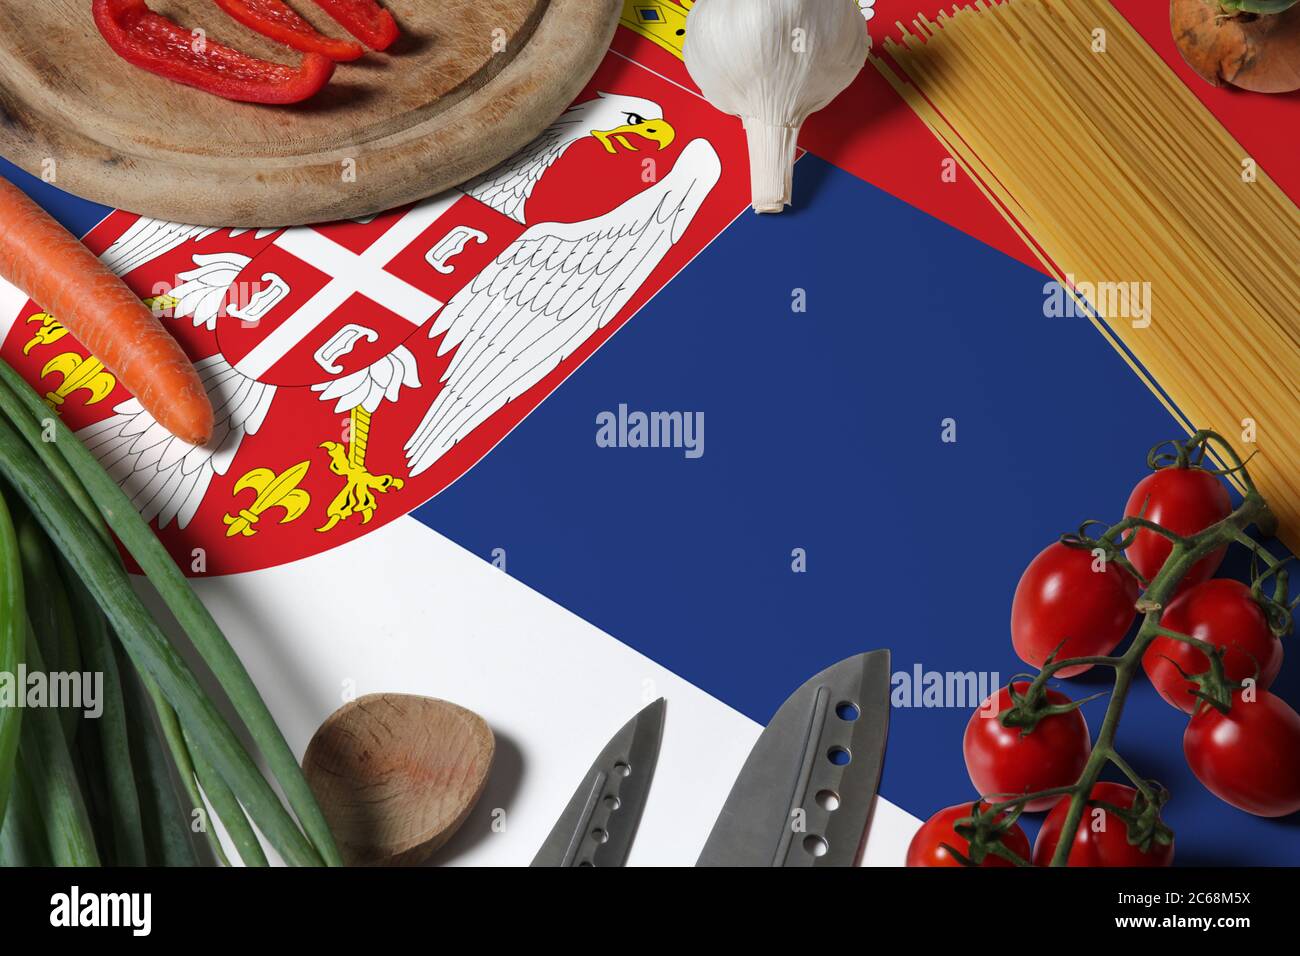 Drapeau de Serbie sur les légumes frais et couteau concept table en bois. Concept de cuisine avec thème de préparation. Banque D'Images